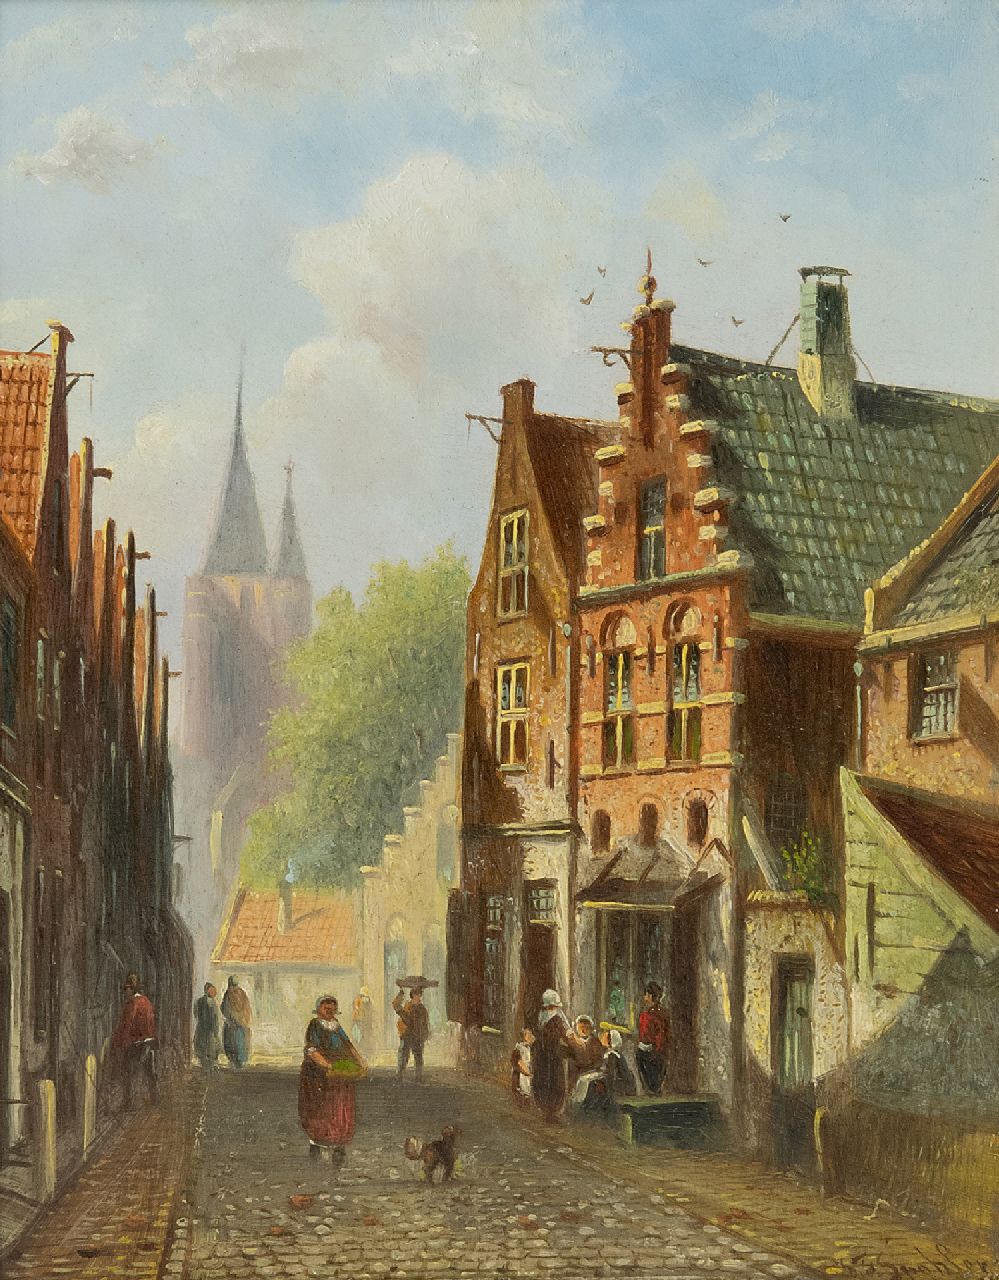 Spohler J.F.  | Johannes Franciscus Spohler | Schilderijen te koop aangeboden | Hollands straatje, olieverf op paneel 18,9 x 14,9 cm, gesigneerd rechtsonder